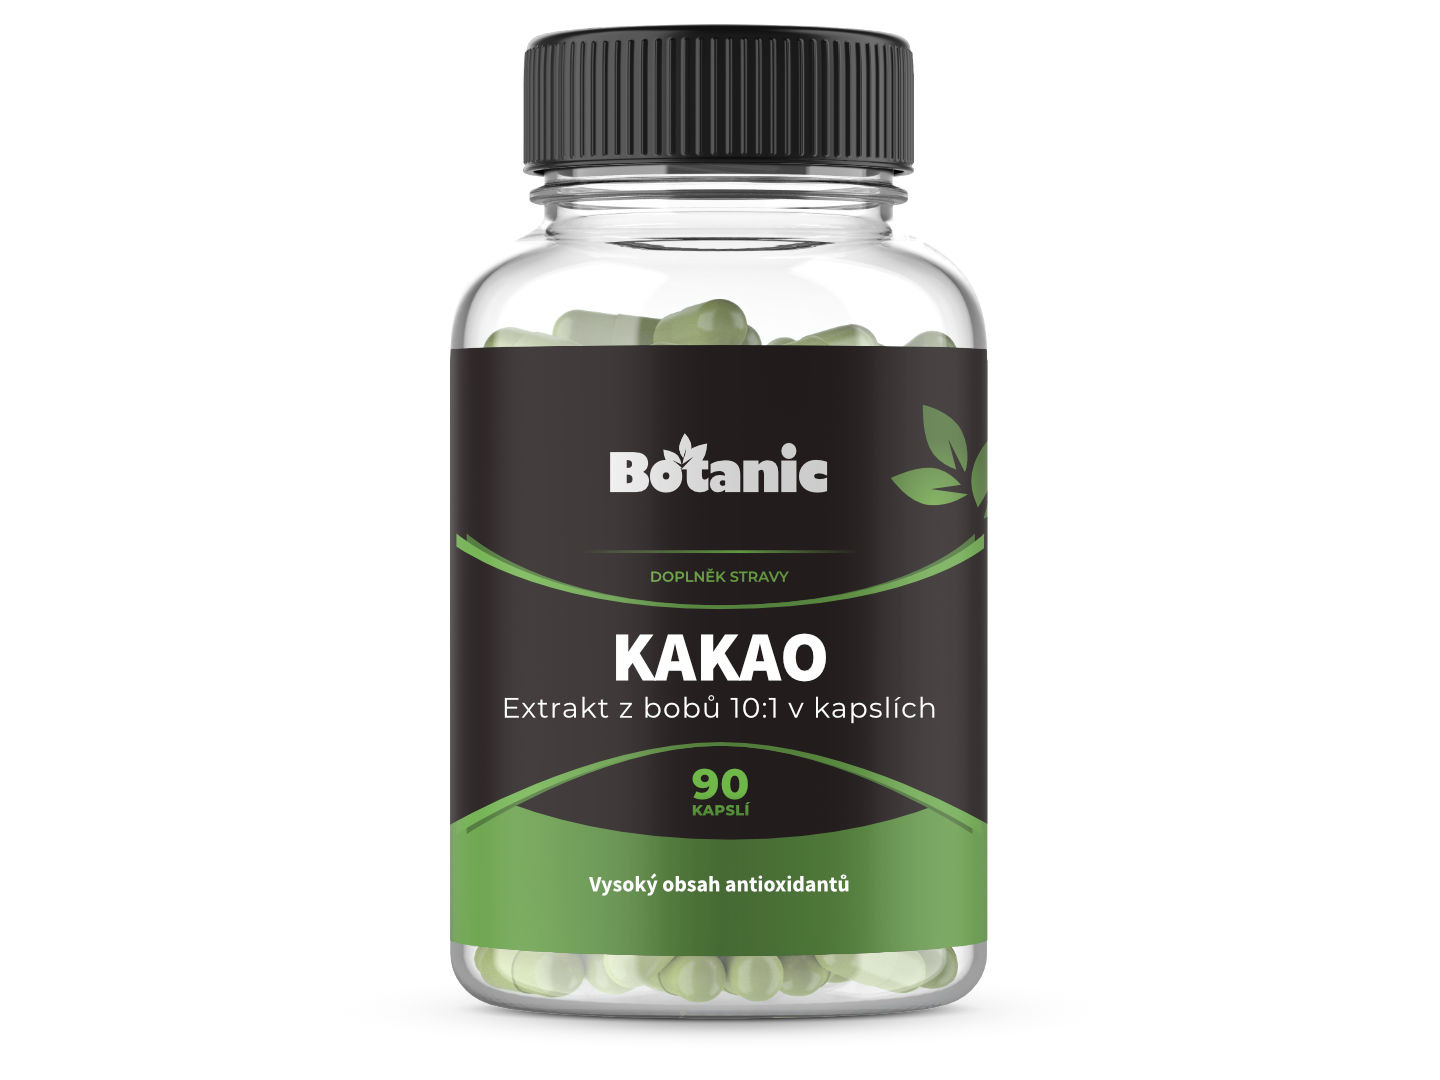 Botanic Kakao - Extrakt z bobů 10:1 v kapslích 90kap.